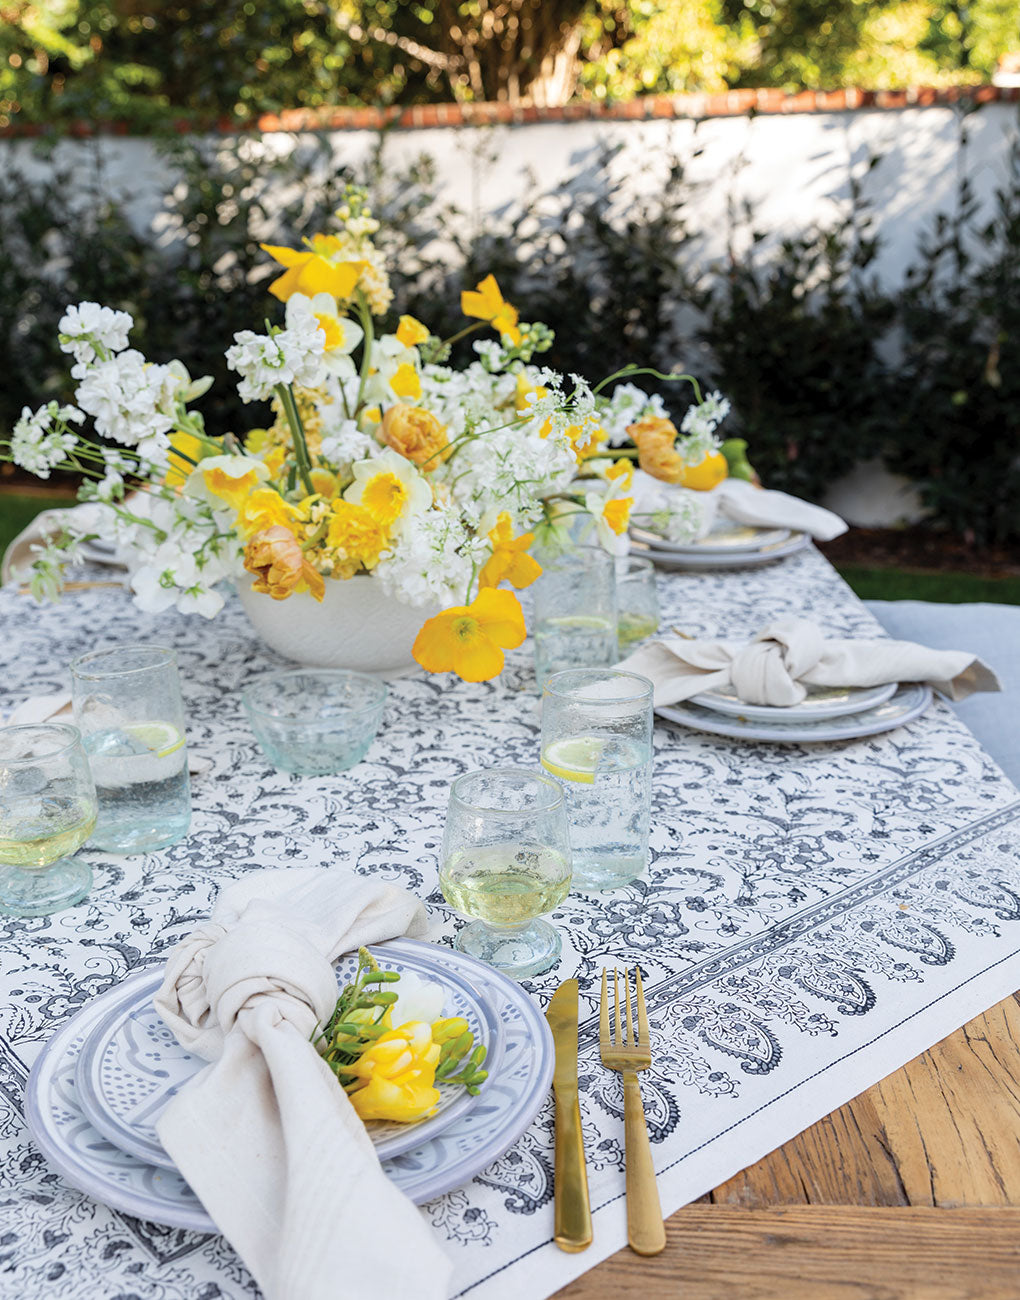 Block Print Tablecloth - Floral